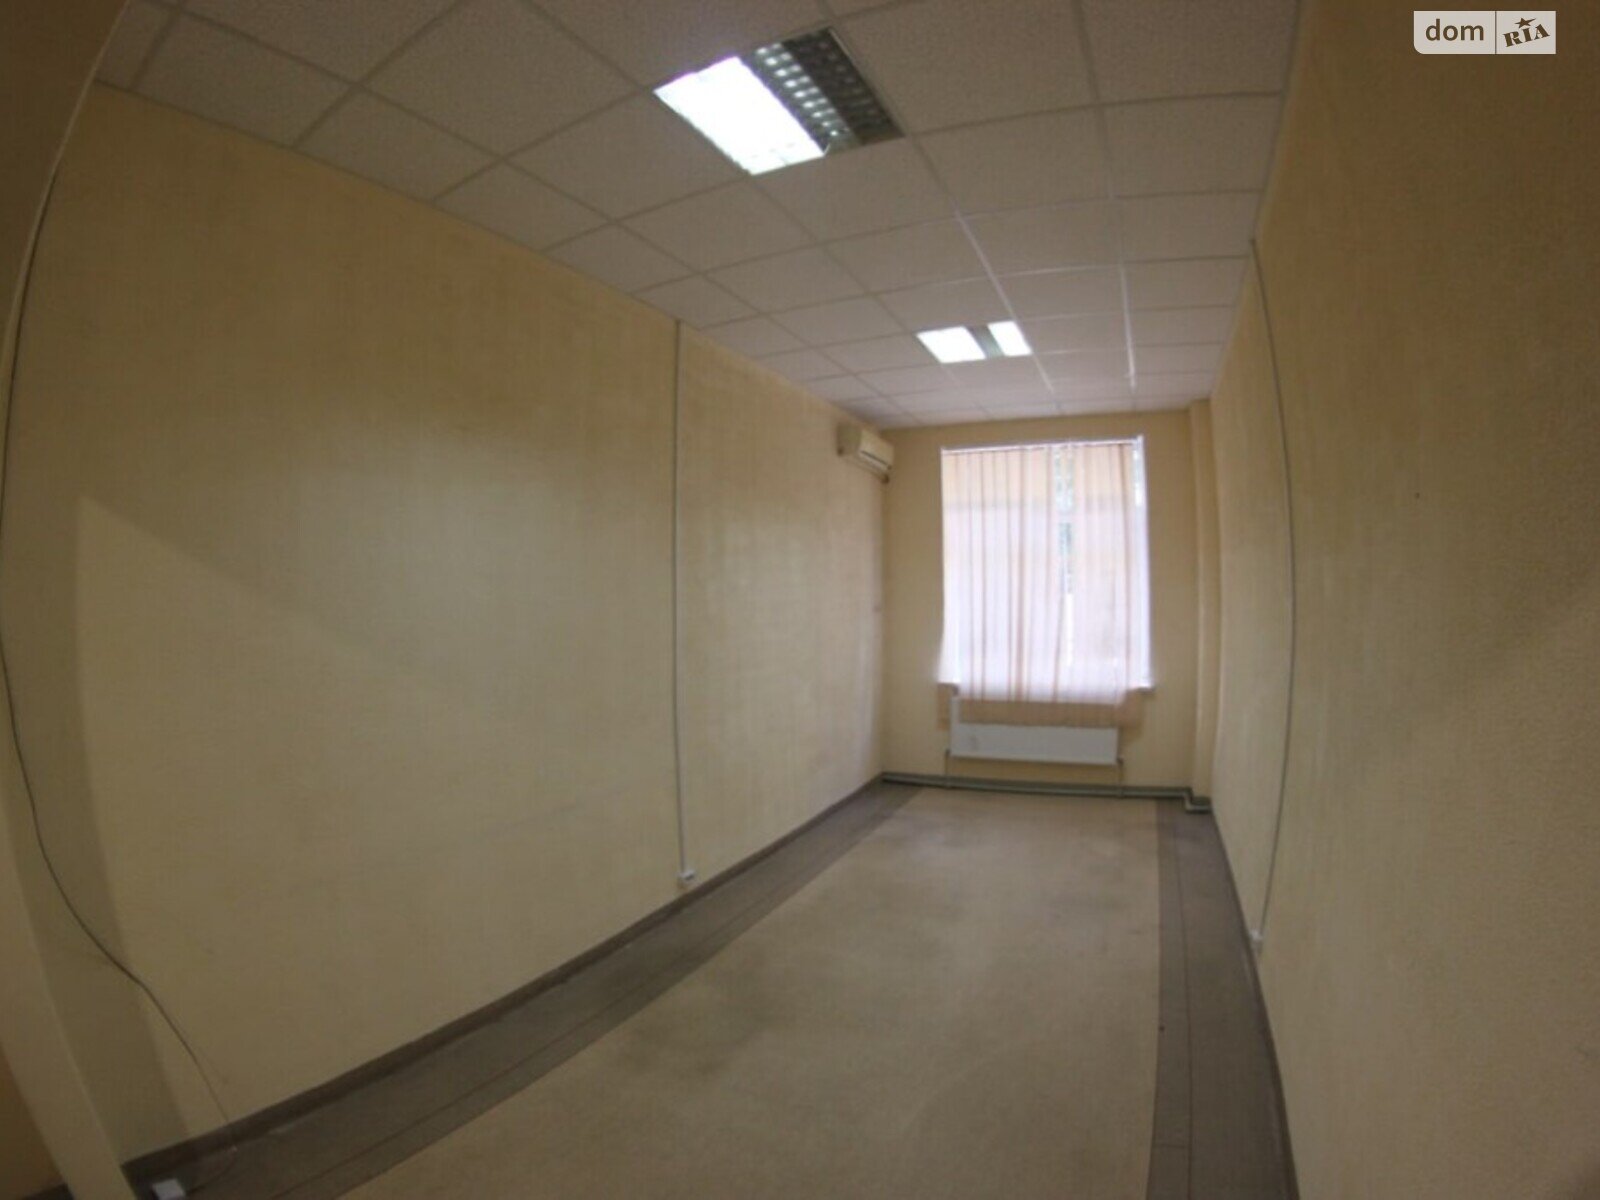 Оренда офісного приміщення в Дніпрі, Ольги княгині вулиця 22, приміщень - 2, поверх - 1 фото 1